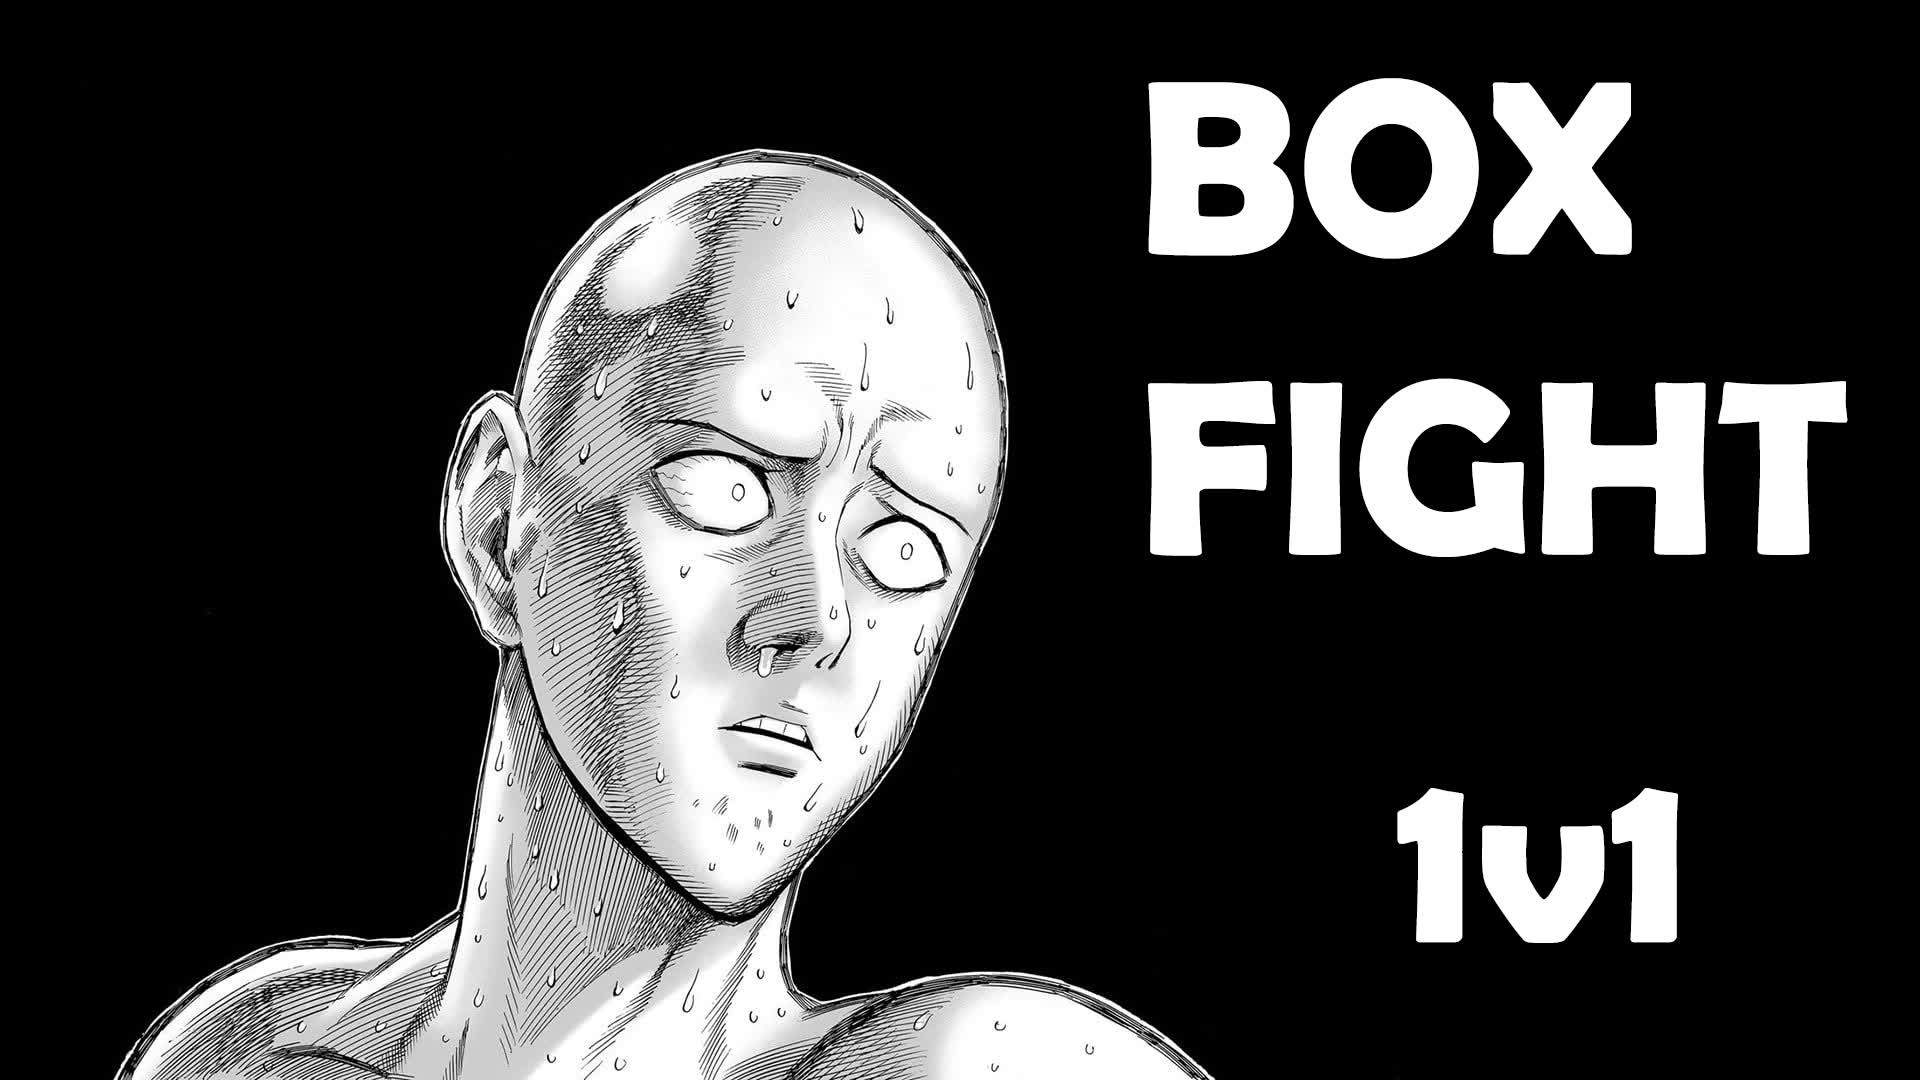 Saitama 🎮💥 : Box Fight 1v1